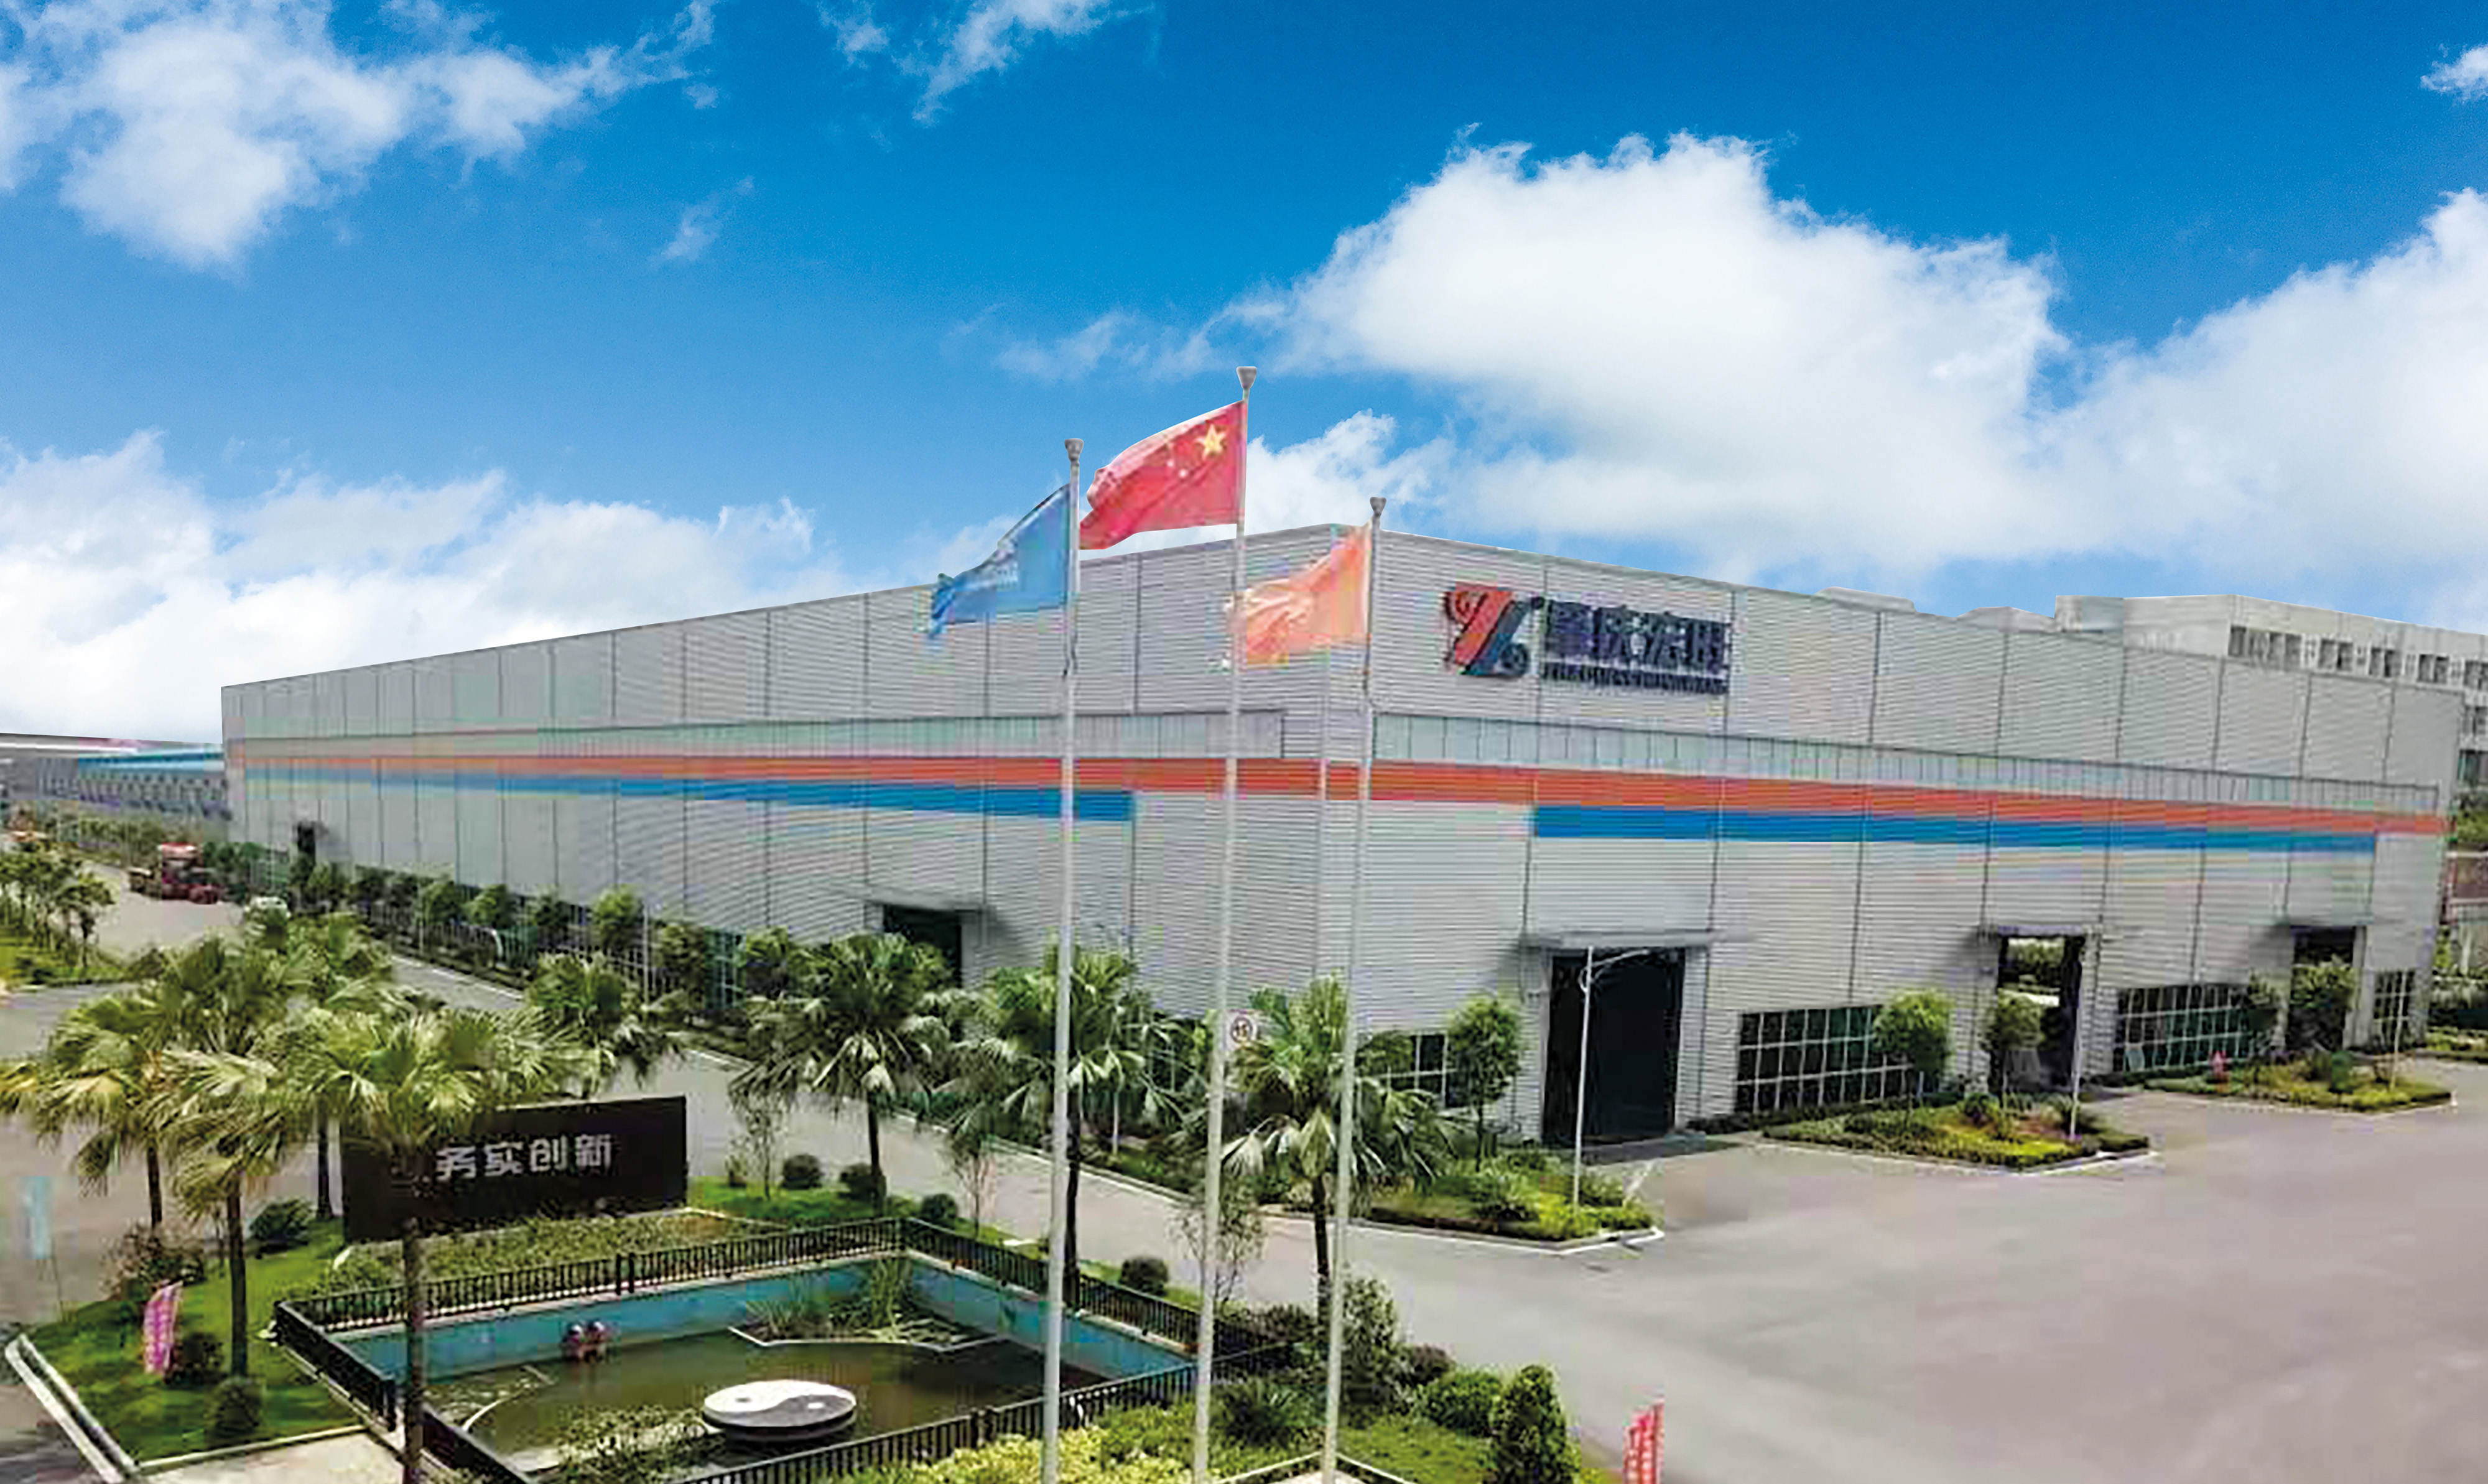 Foshan Hermdeco steel co., LTD., Fundada en 2006, pertence ao grupo Hongwang e leva máis de 10 anos comprometida coa innovación e a calidade do aceiro inoxidable. Actualmente, a compañía converteuse nun conxunto de deseño de materiais de aceiro inoxidable. , transformación como unha das grandes empresas globais.